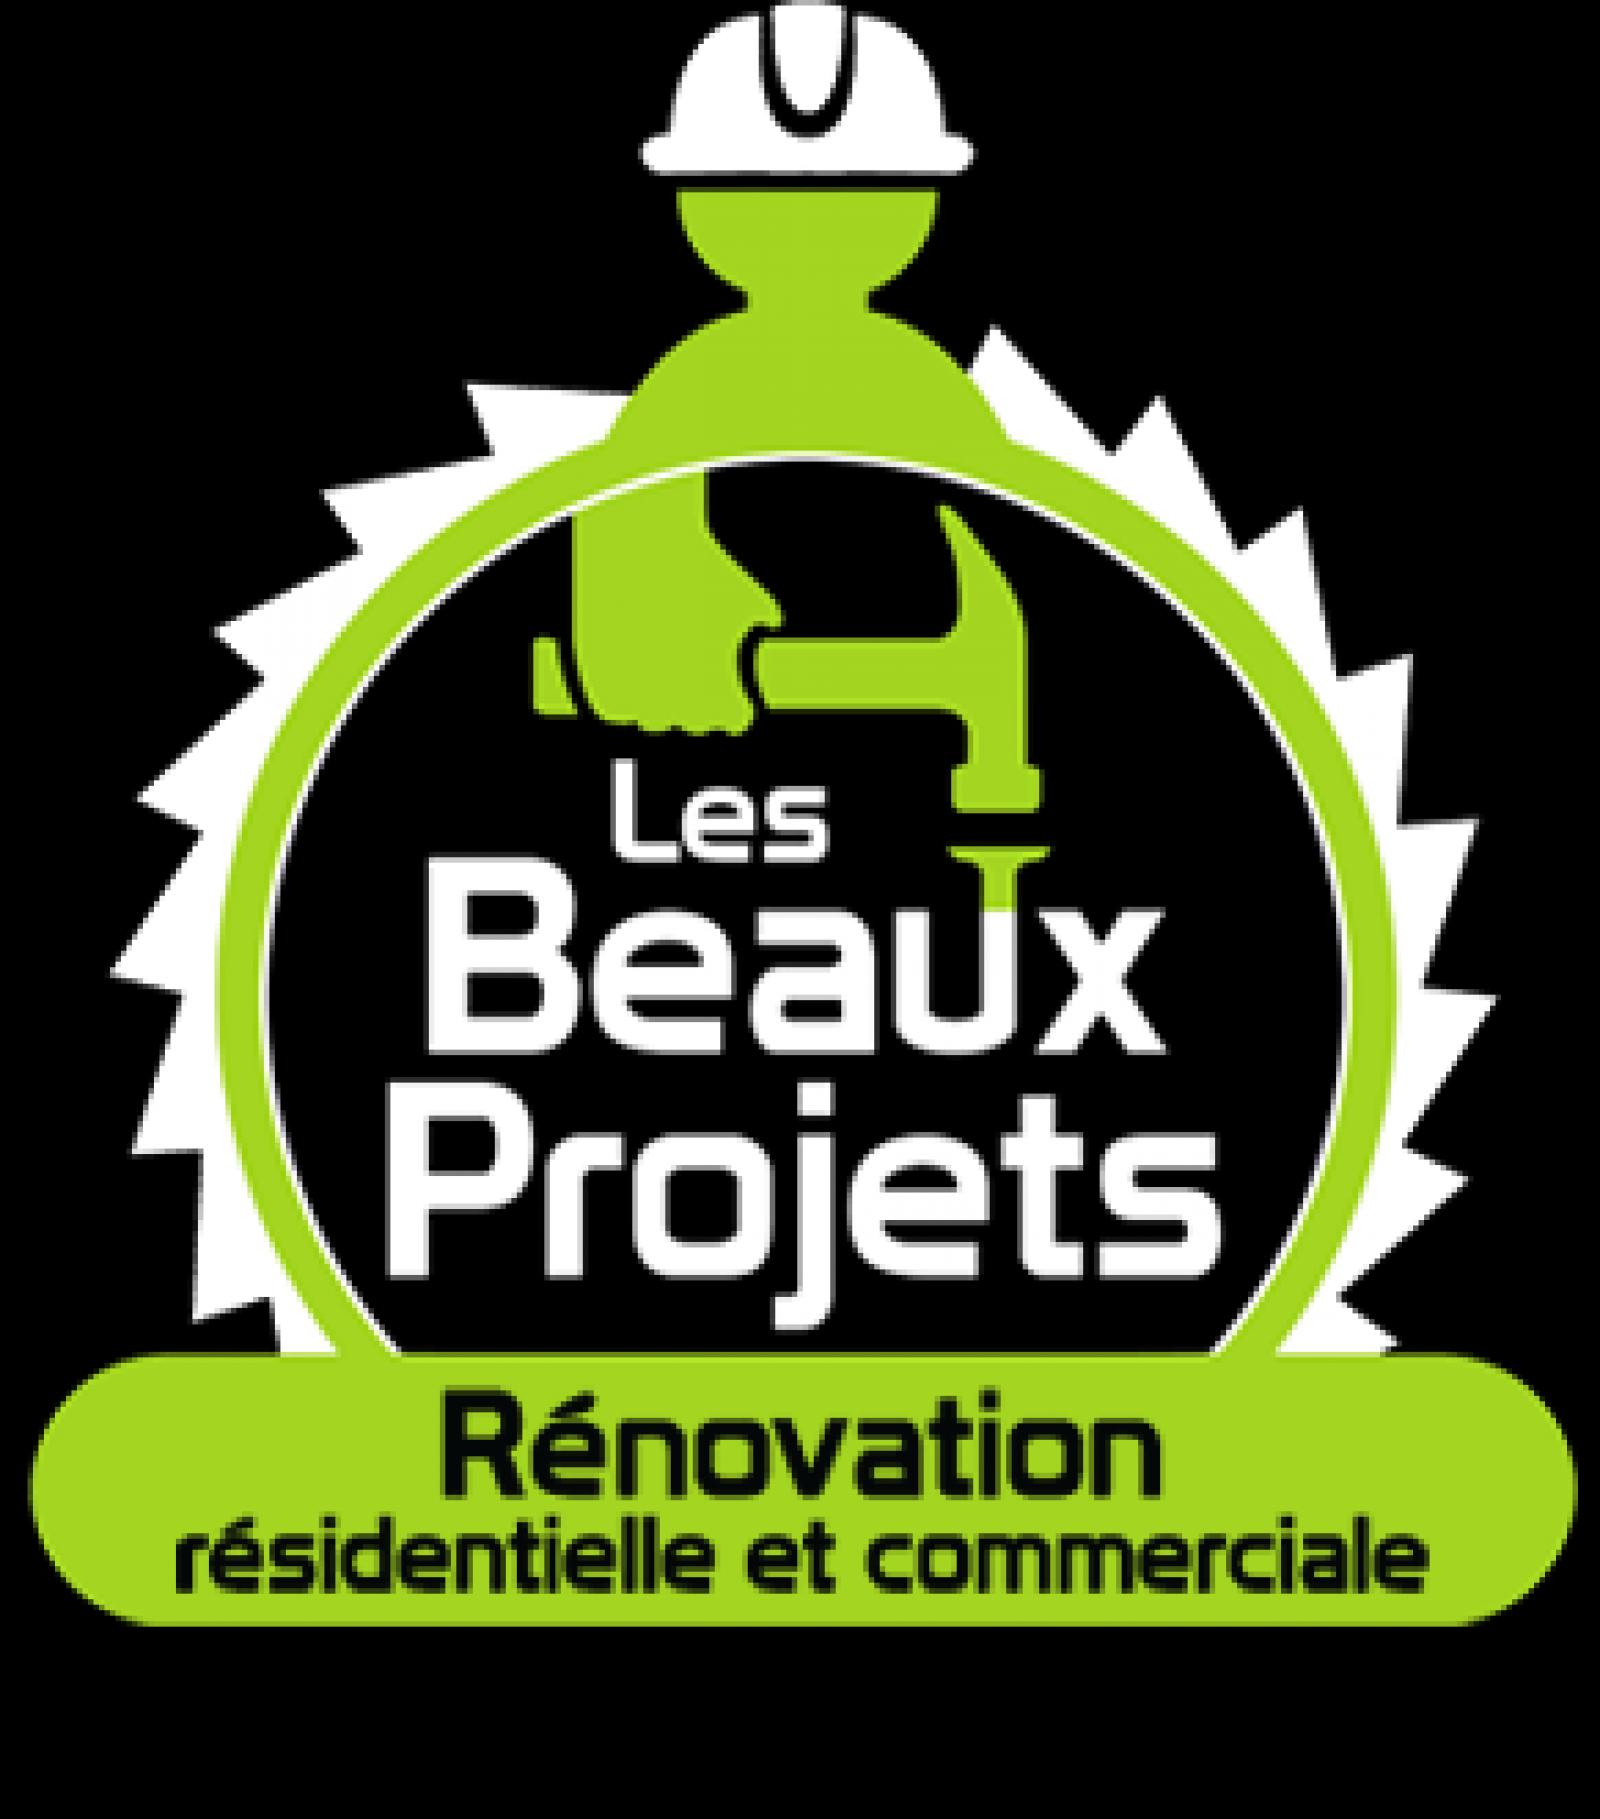 Construction Rénovation les beaux projet Québec charlevoix Logo